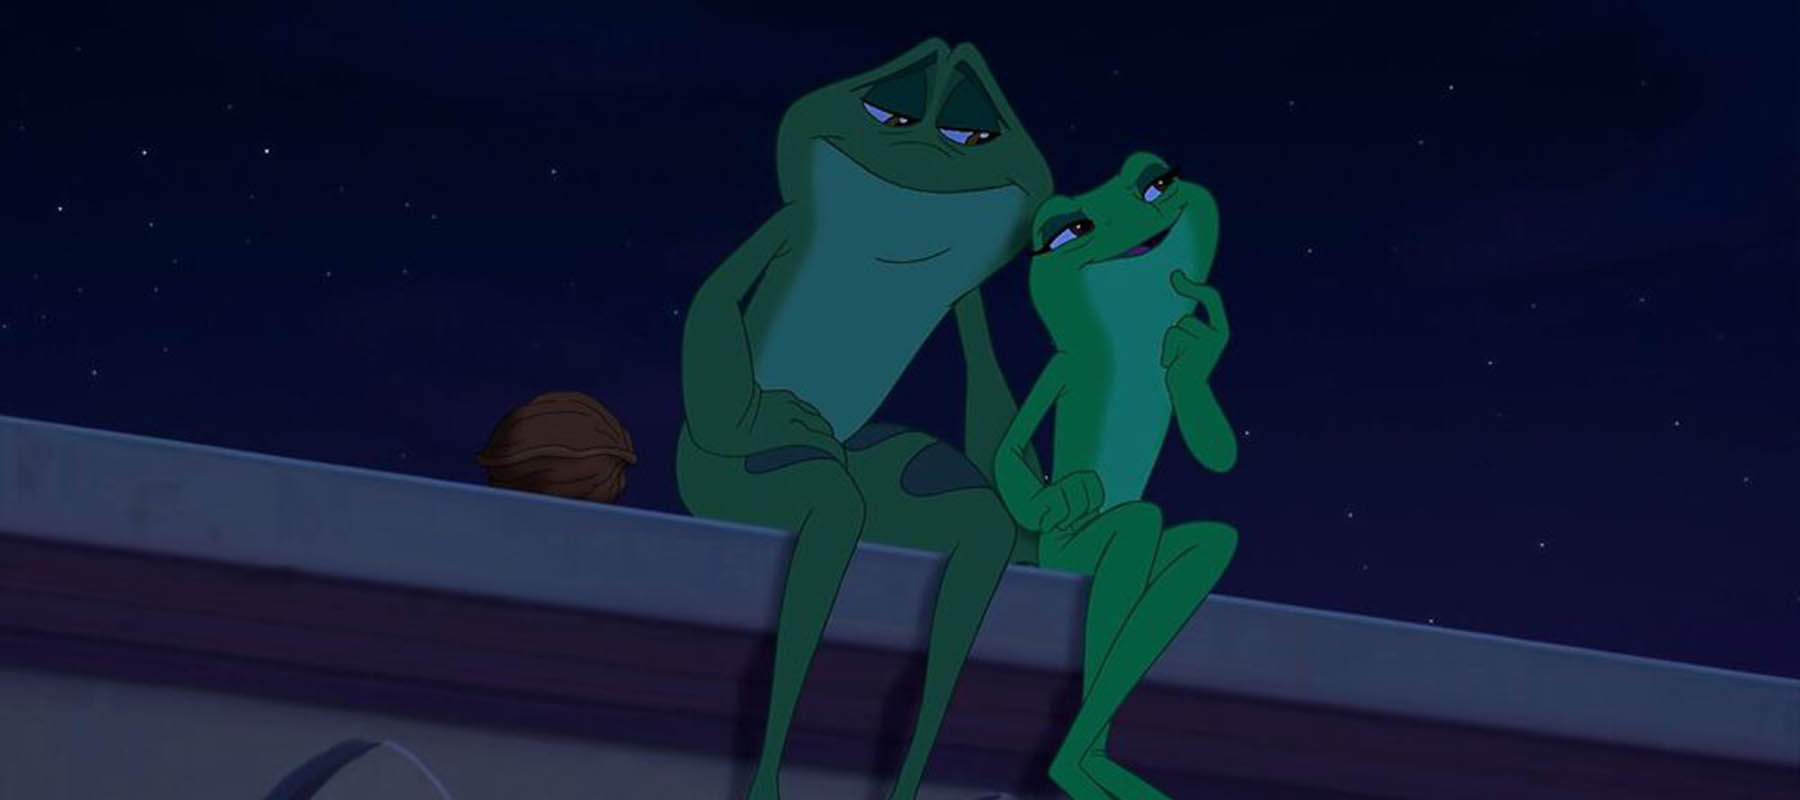 เจ้าชายกบ the princess and the frog